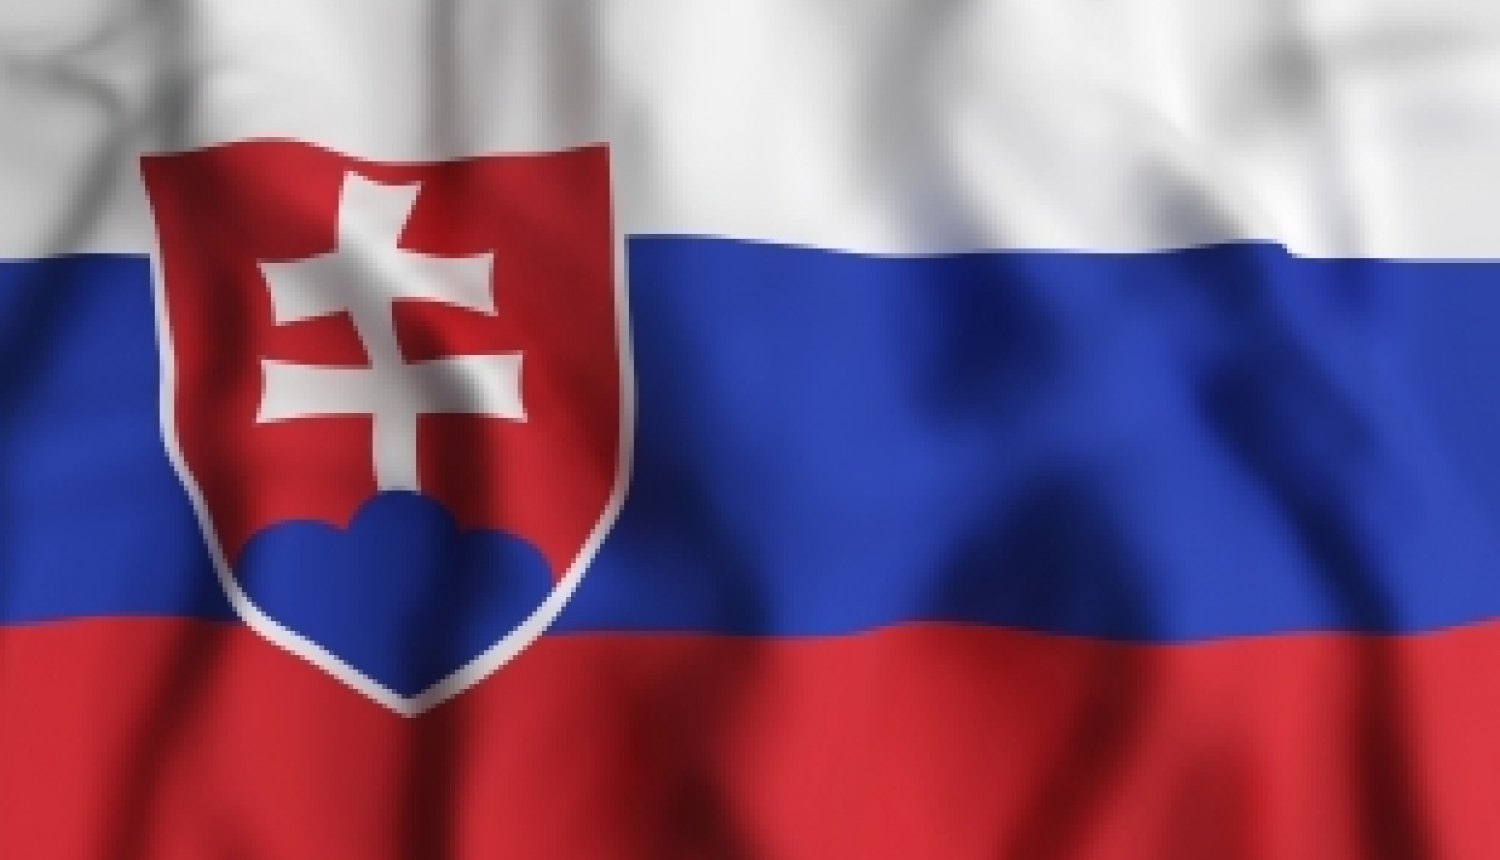 Iespēja pieteikties Slovākijas valdības stipendijām